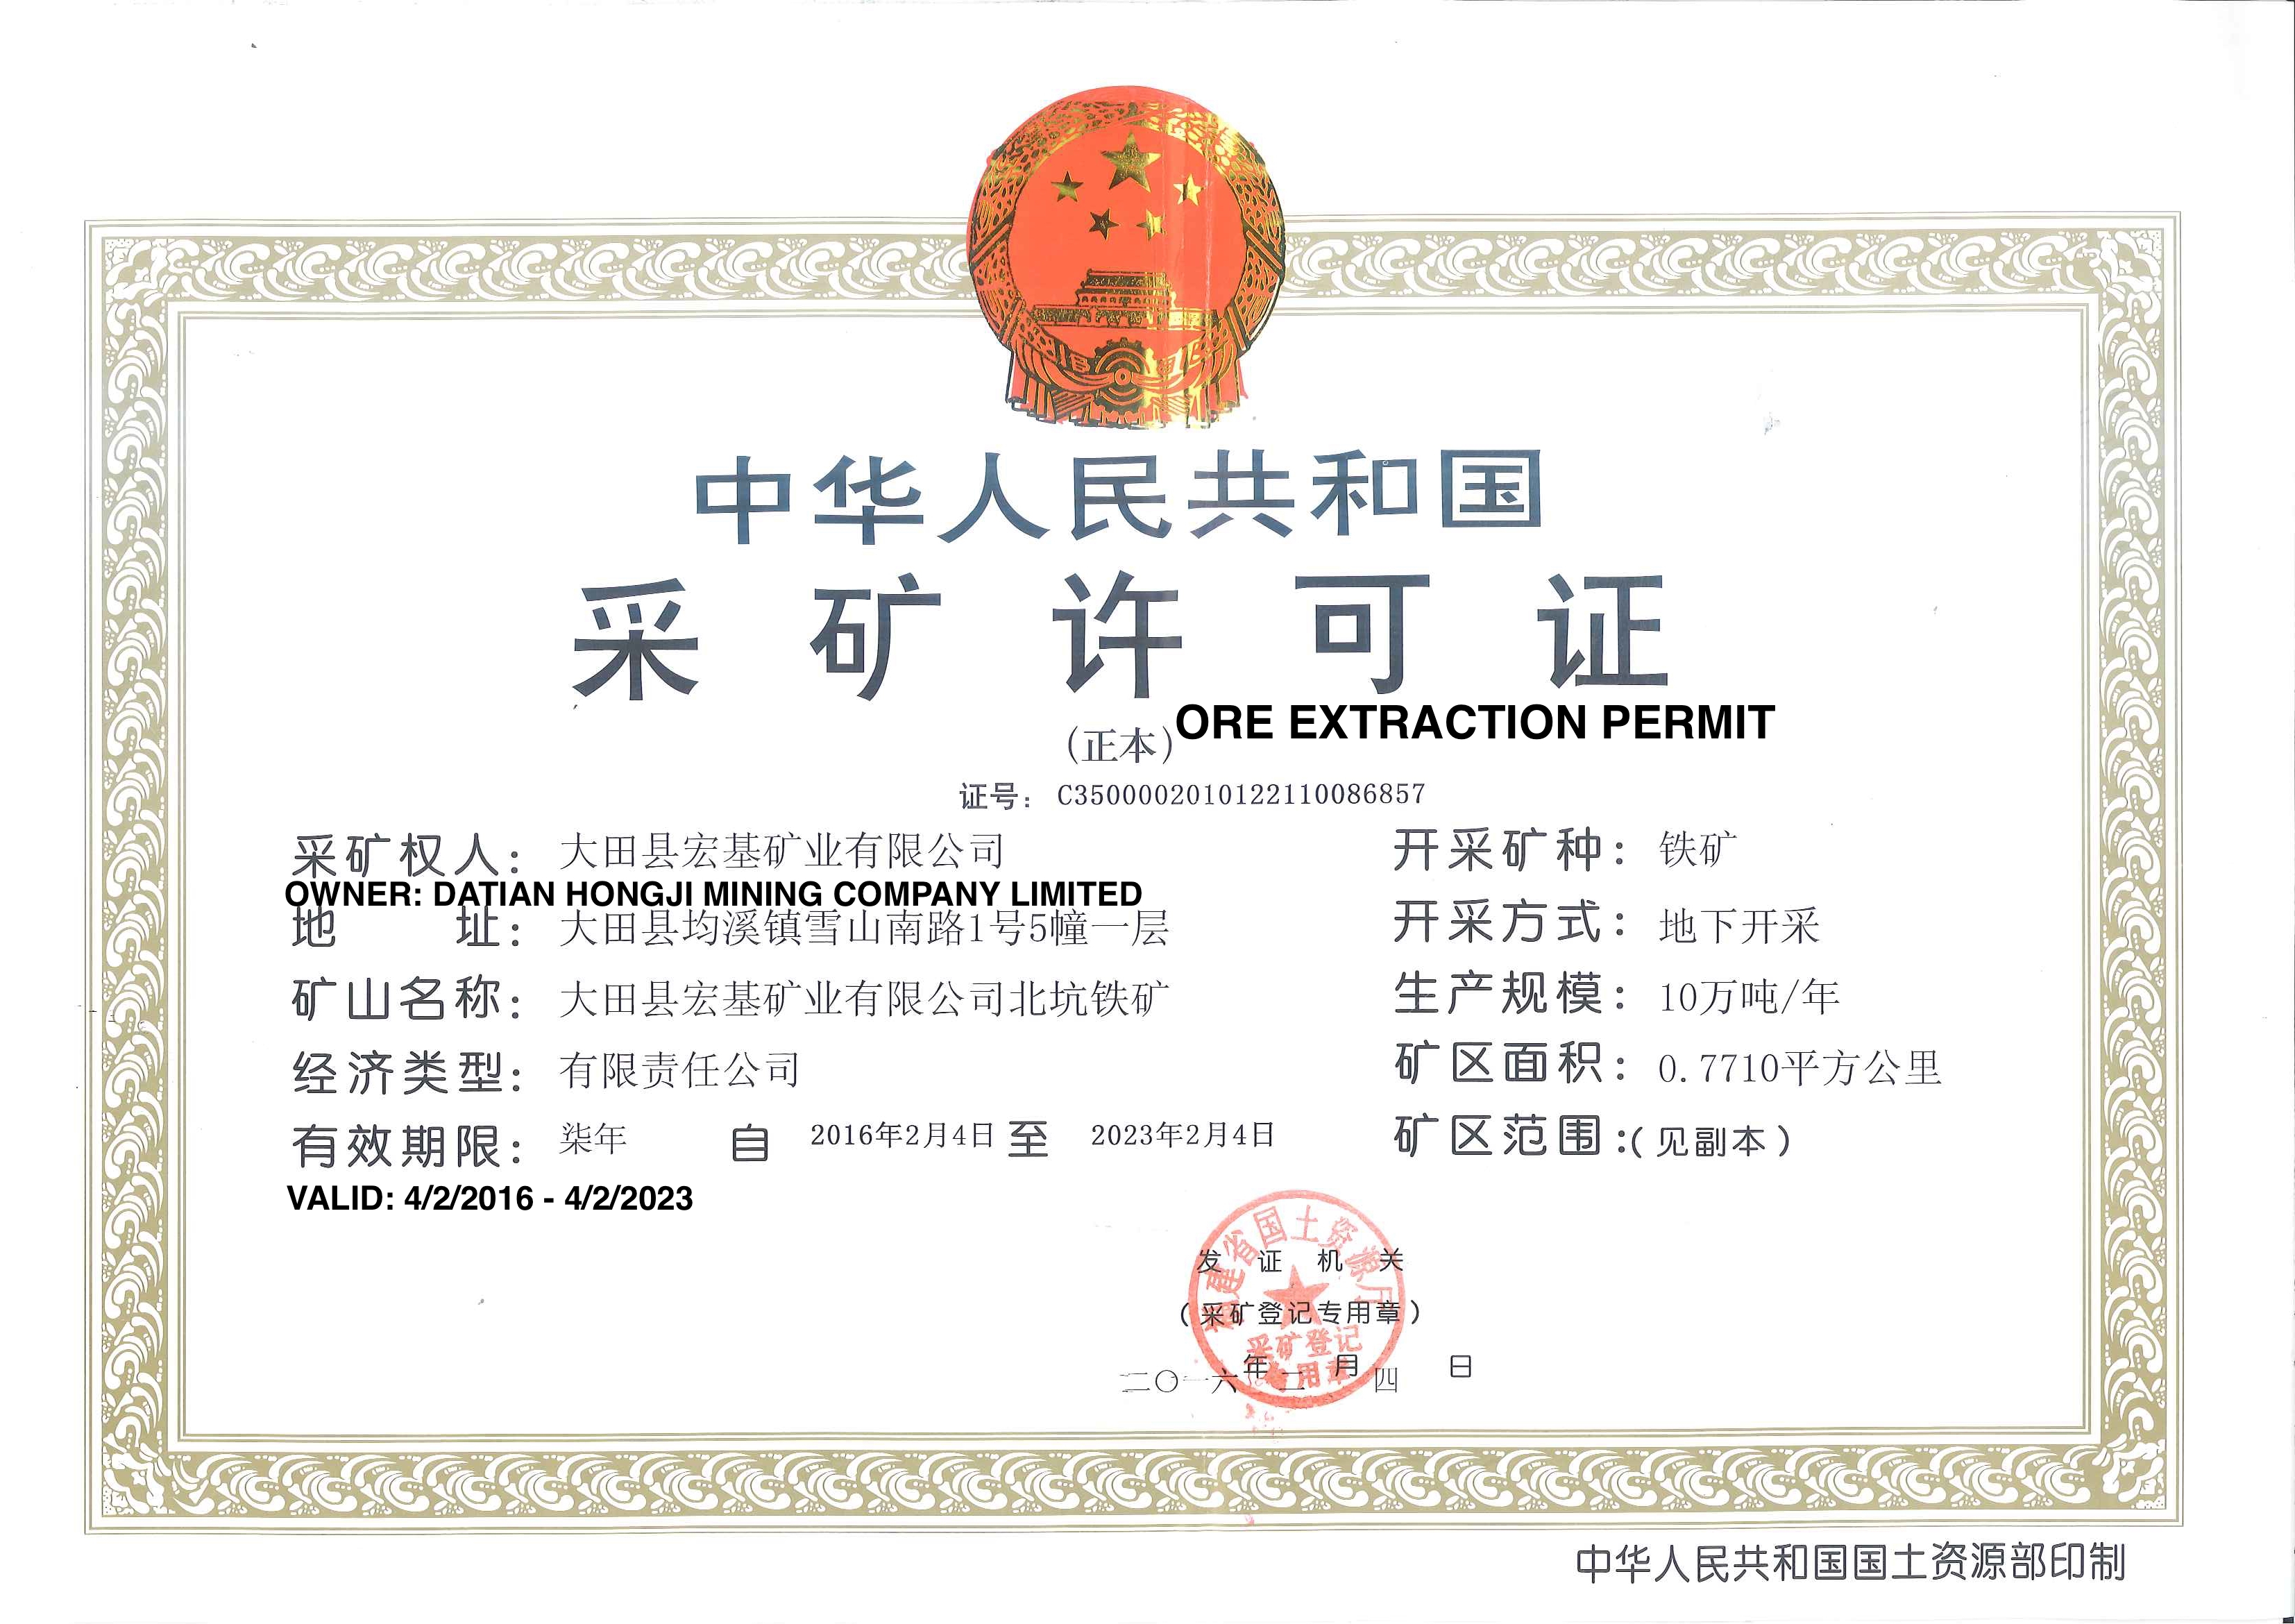 Ore Extraction Permit